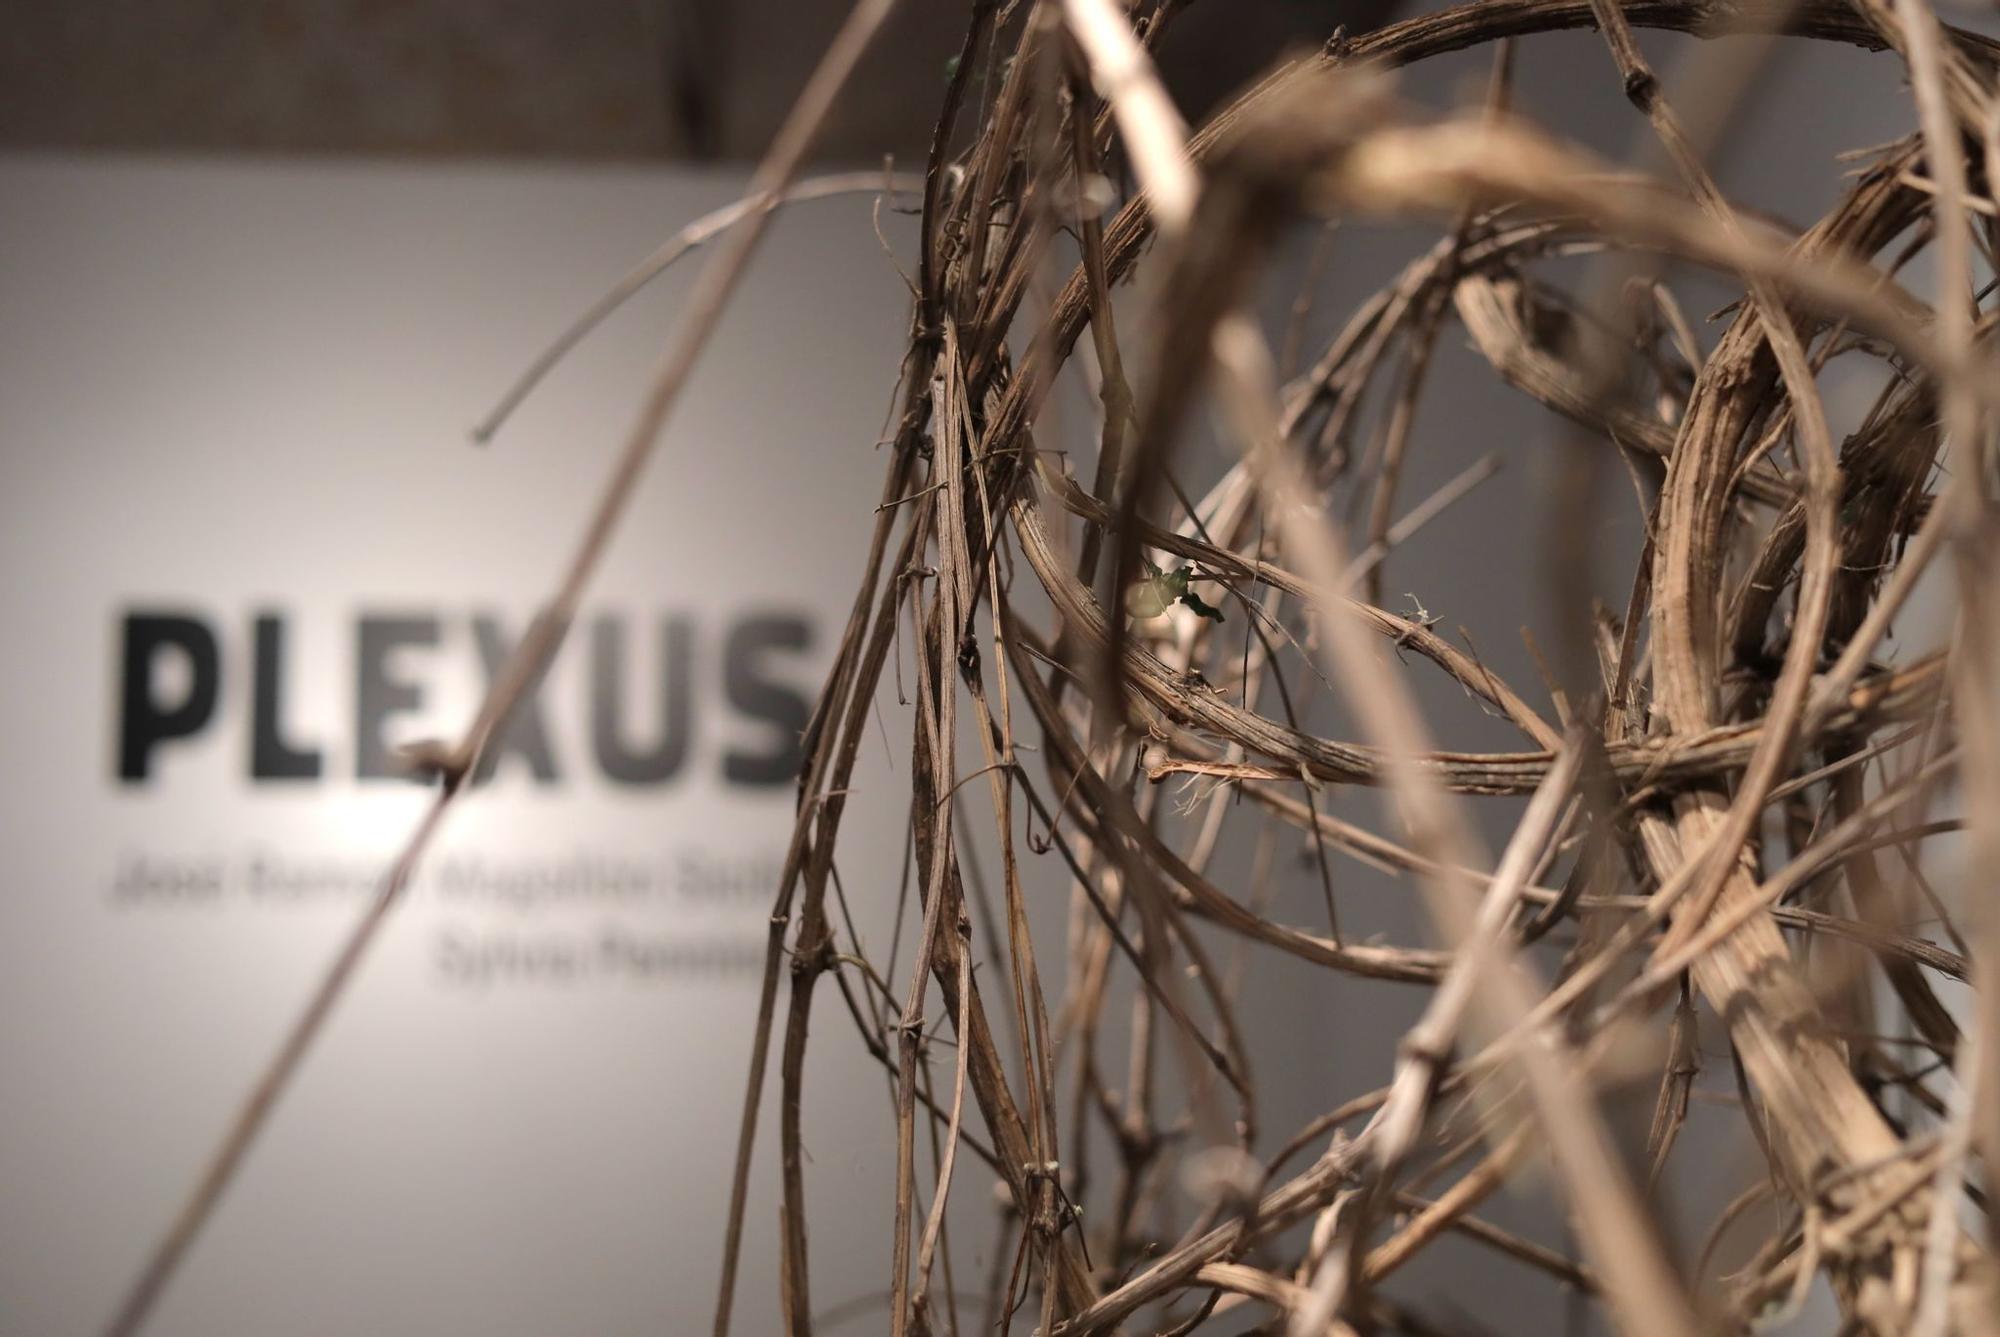 En imágenes | Así es la exposición 'Plexus' en la Casa de los Morlanes